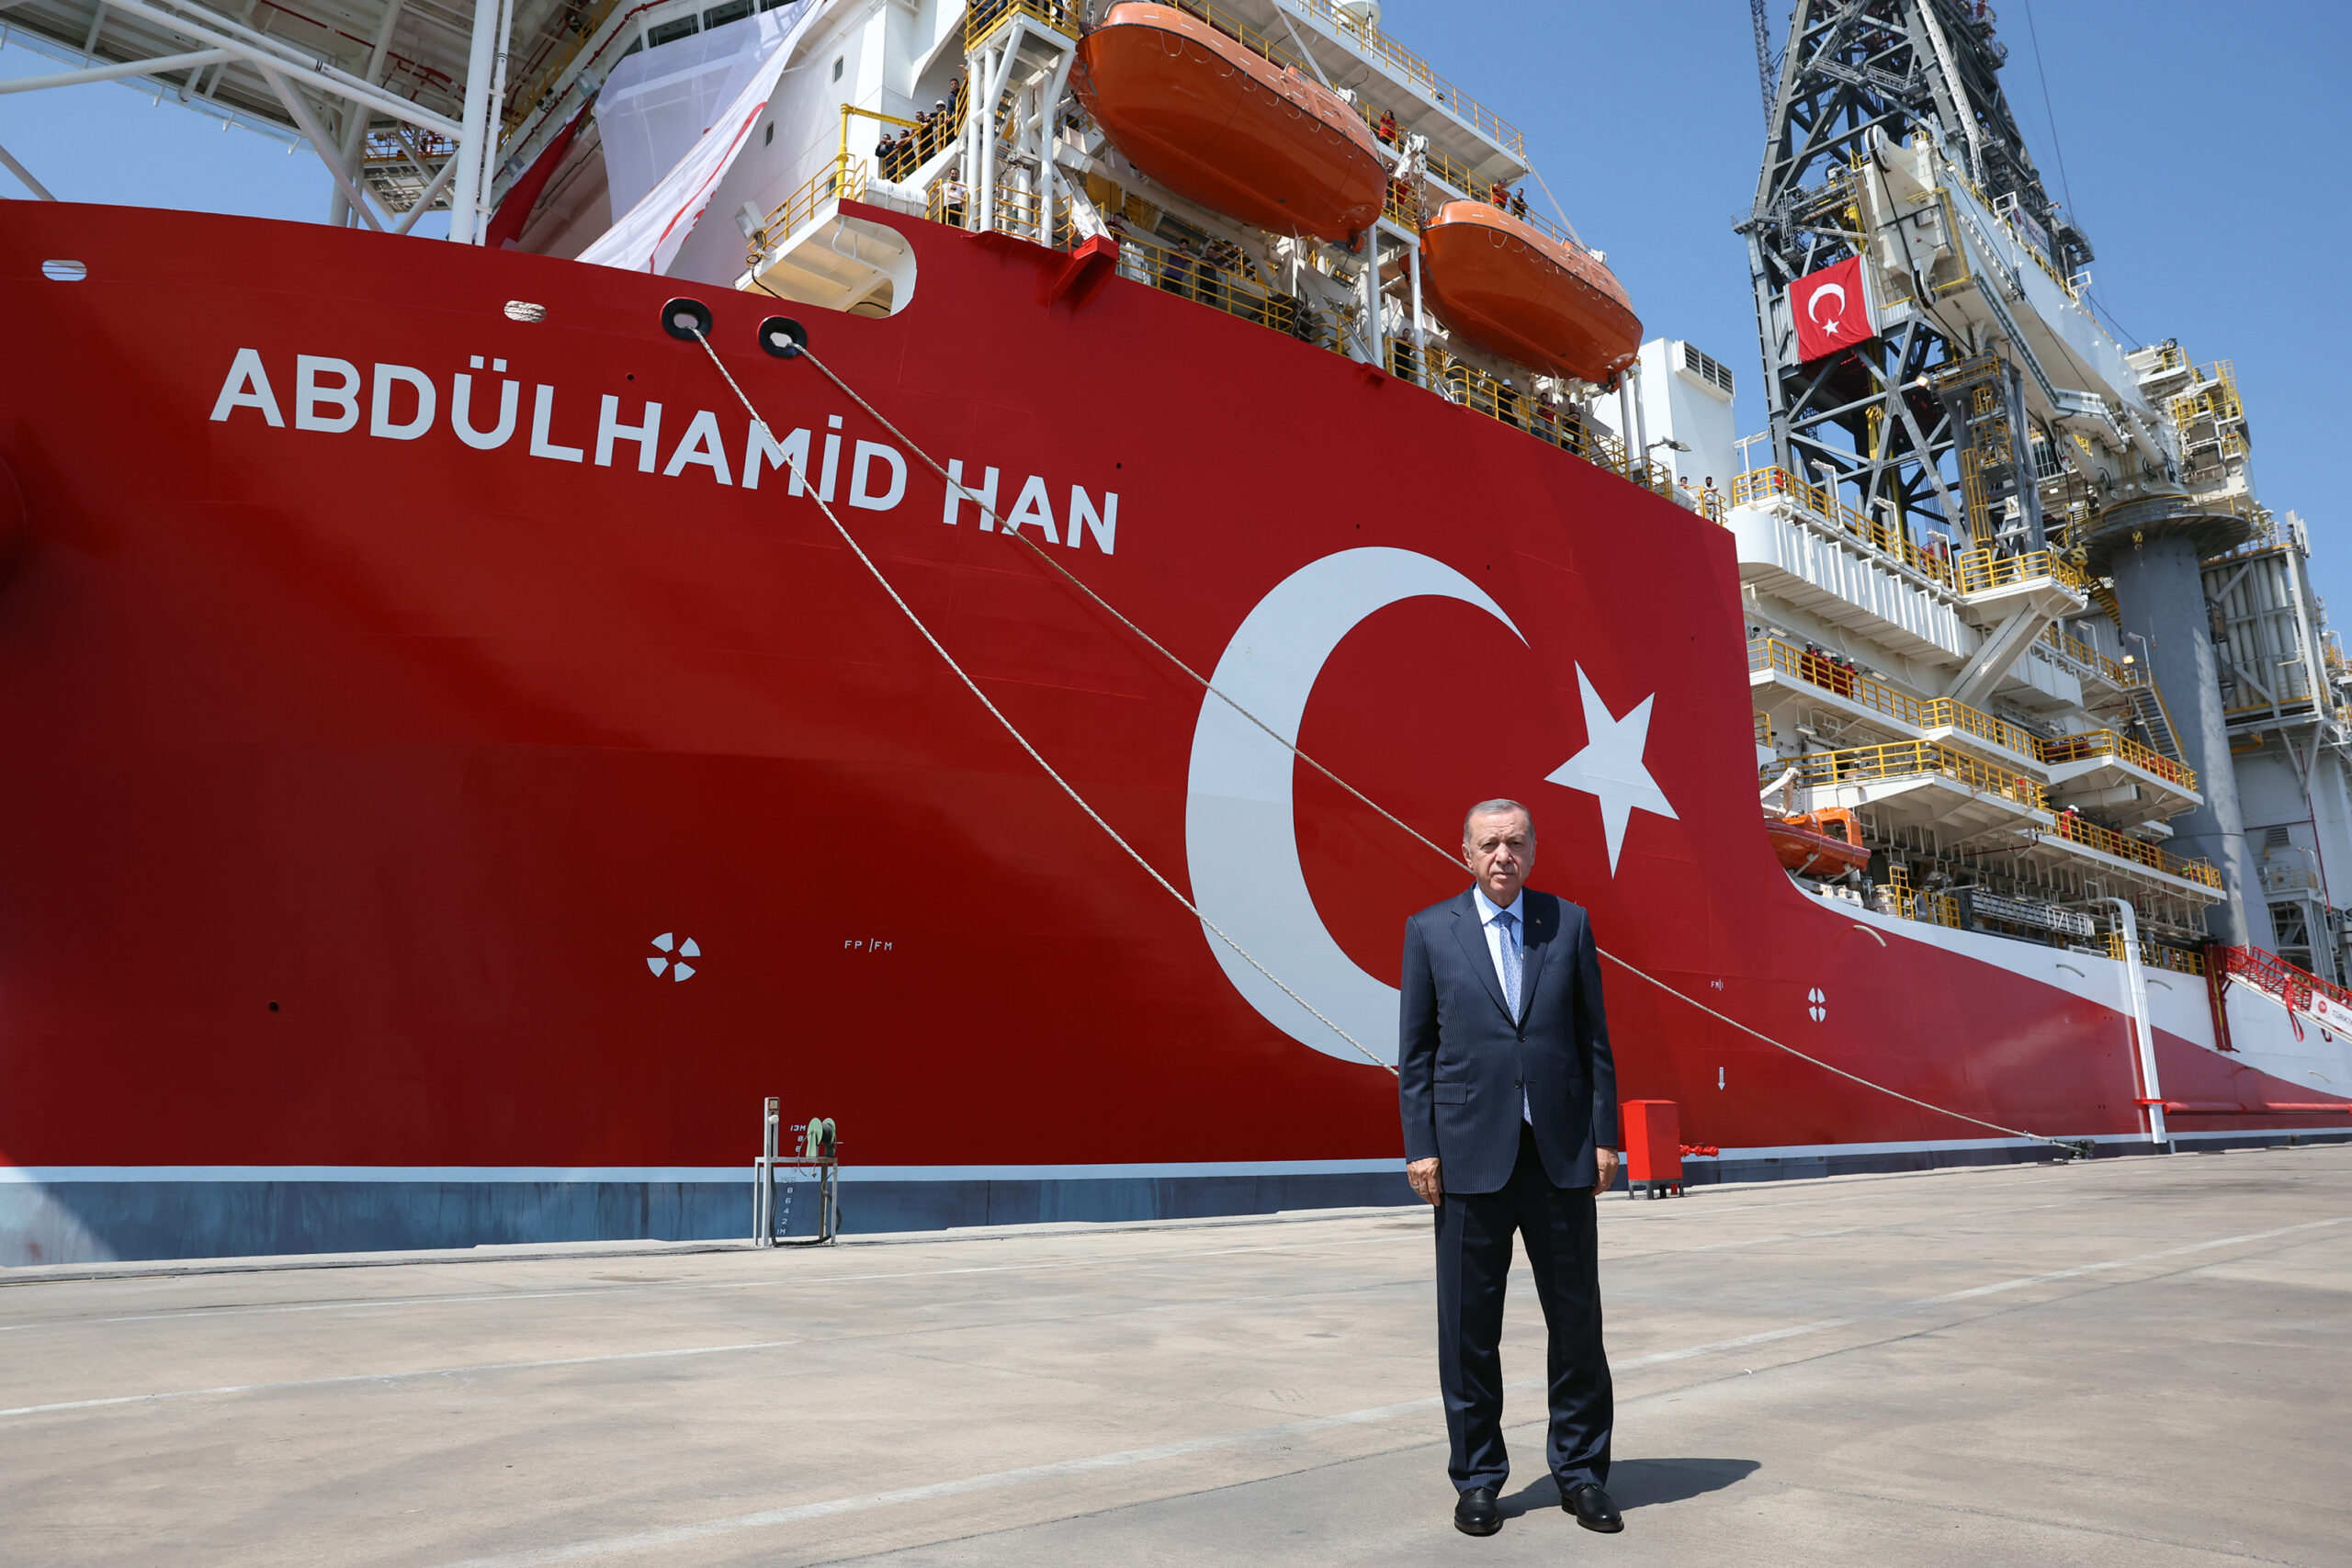 سفينة حفر تركية قد تعمل في المنطقة الاقتصادية التركية – الليبية للتنقيب عن النفط والغاز الطبيعي